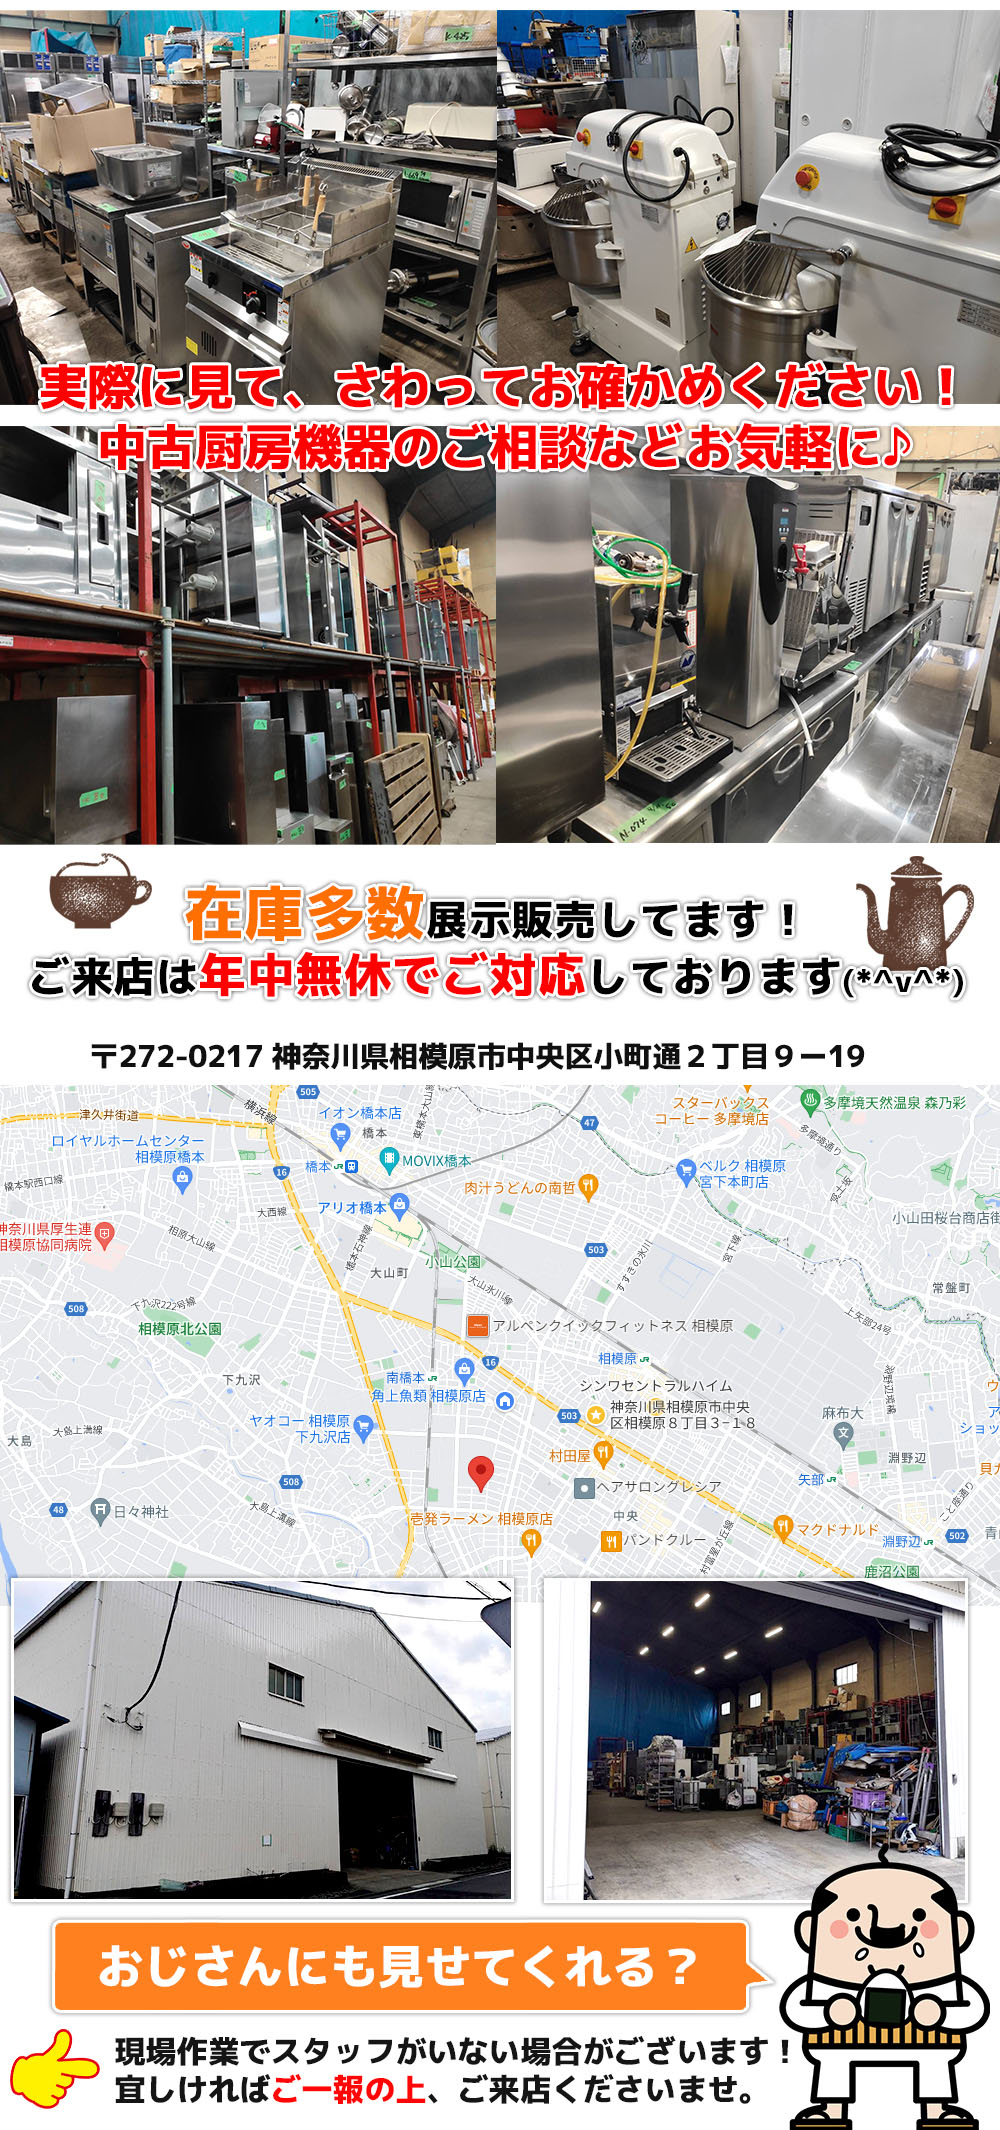 送料別途】2017年製 アンナカ(ニチワ) 電気ビーフェポット 電気温蔵庫 